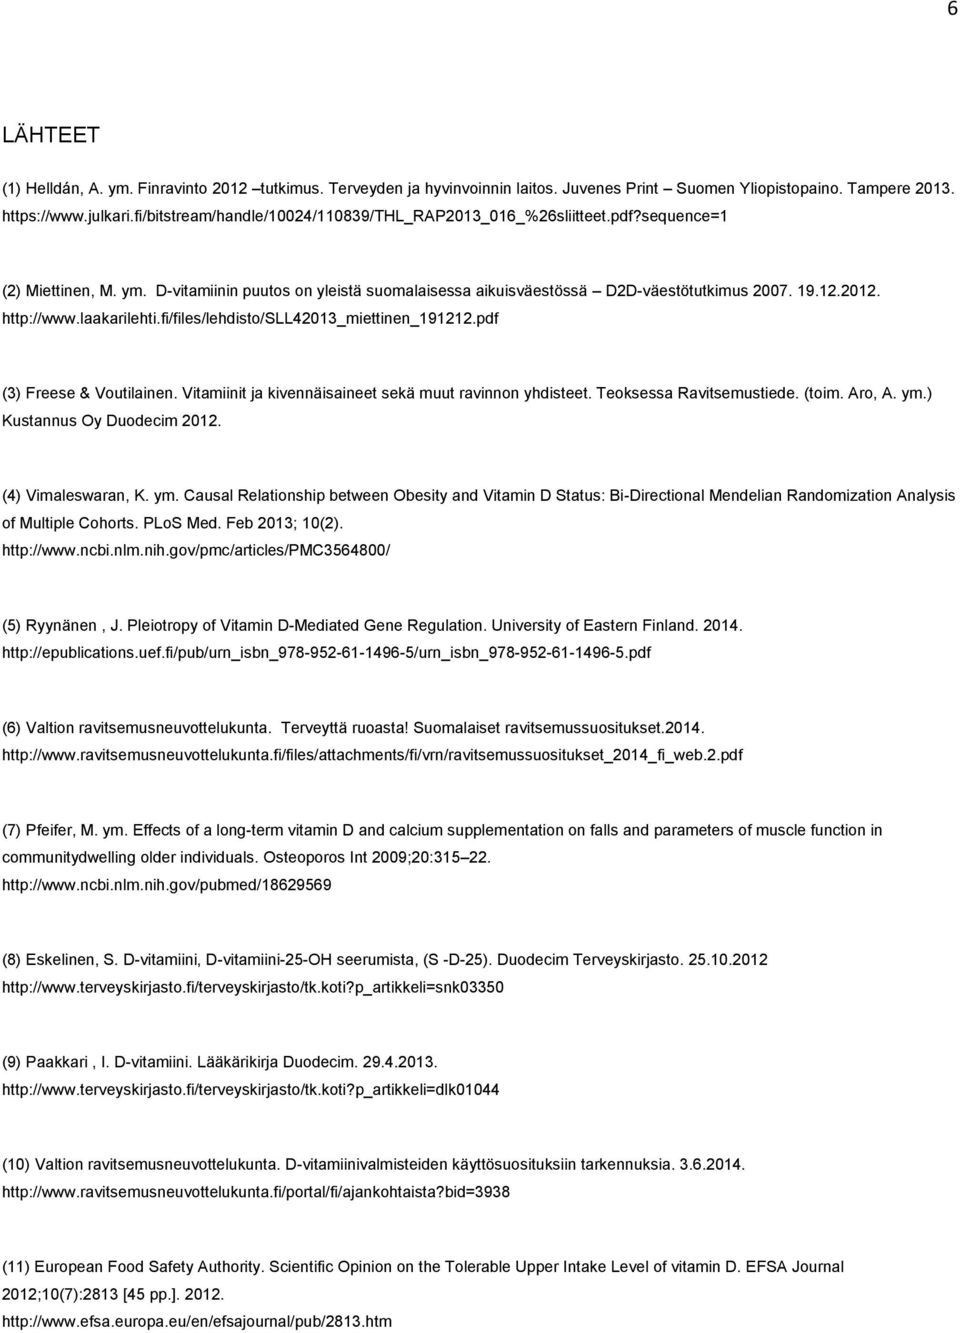 http://www.laakarilehti.fi/files/lehdisto/sll42013_miettinen_191212.pdf (3) Freese & Voutilainen. Vitamiinit ja kivennäisaineet sekä muut ravinnon yhdisteet. Teoksessa Ravitsemustiede. (toim. Aro, A.